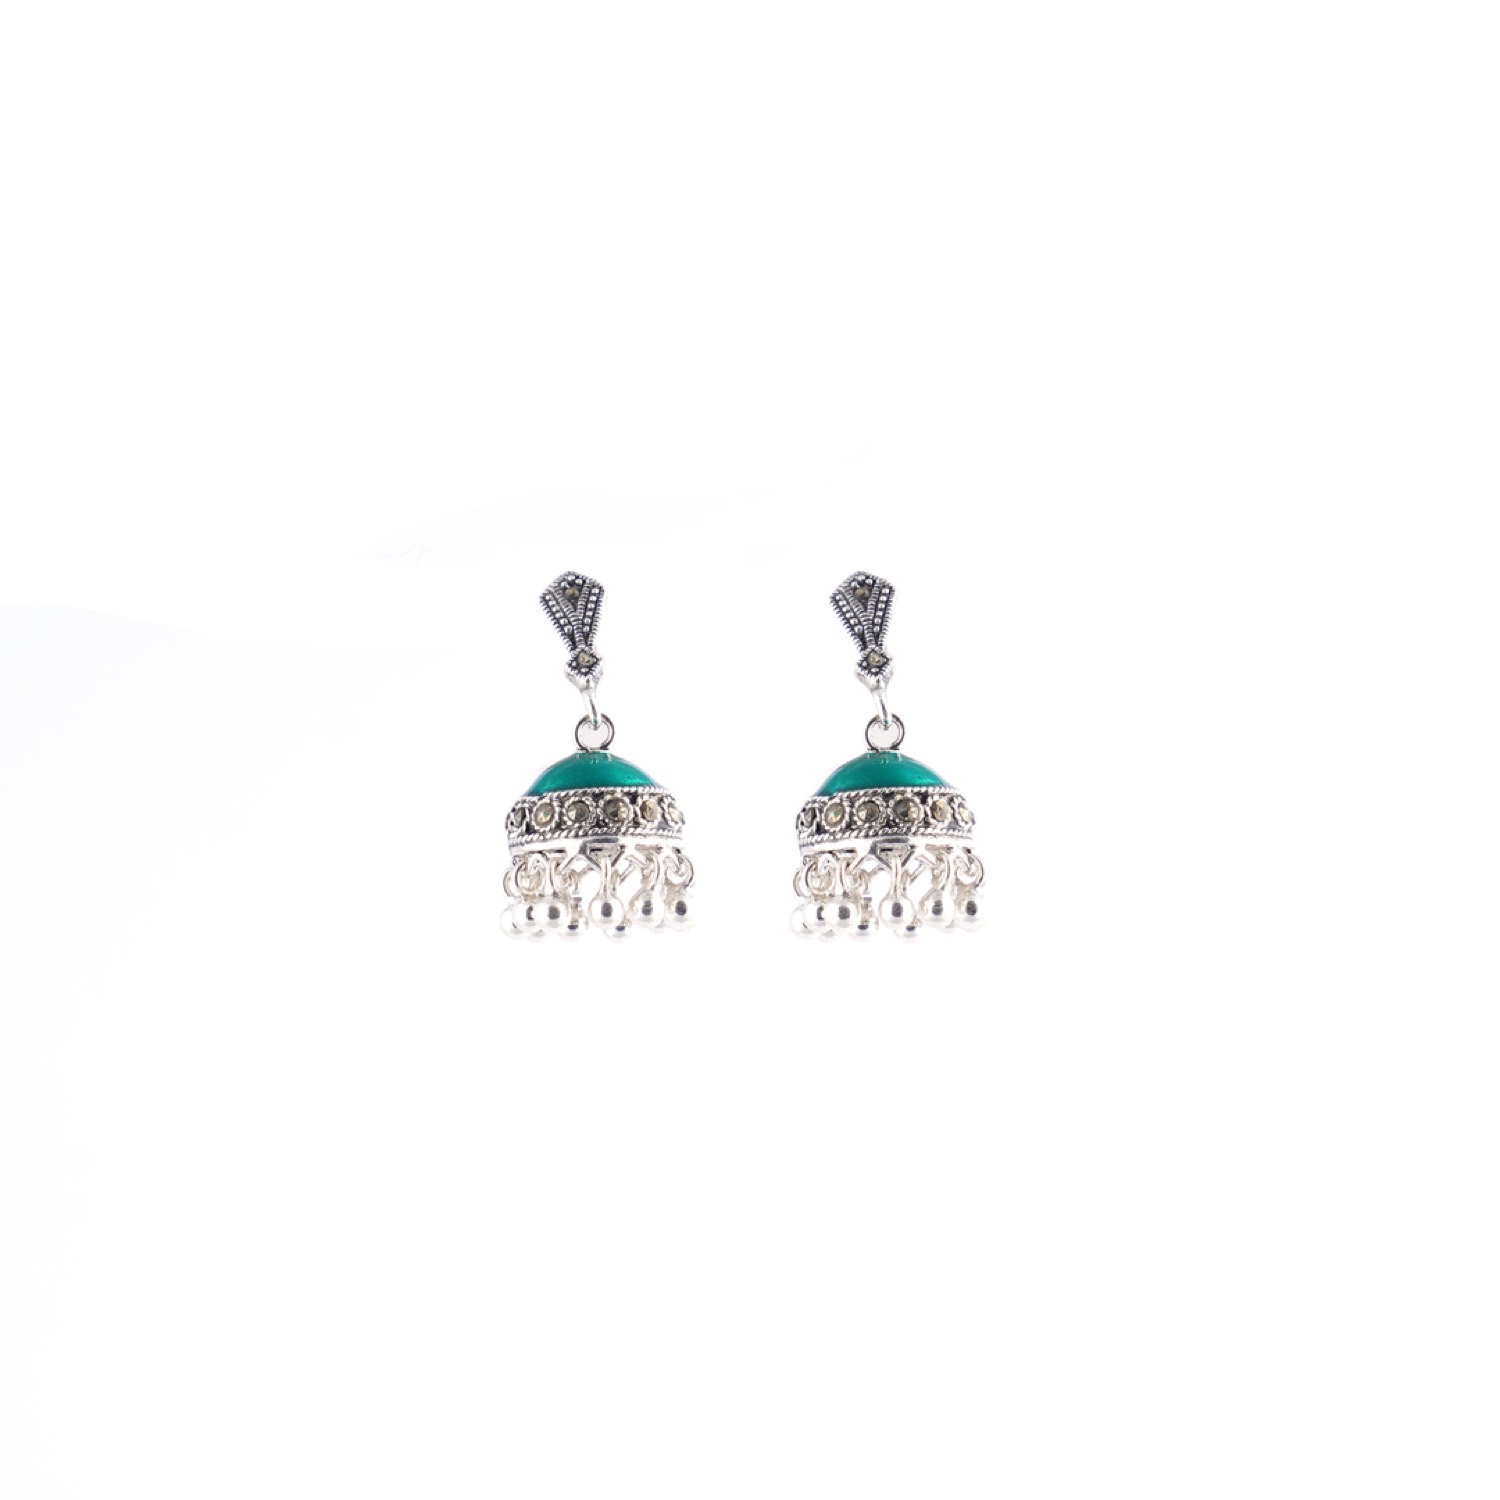 varam_earrings_102022_teal_green_enameled_with_silver_bead_dangling_jumkha_silver_earrings-1